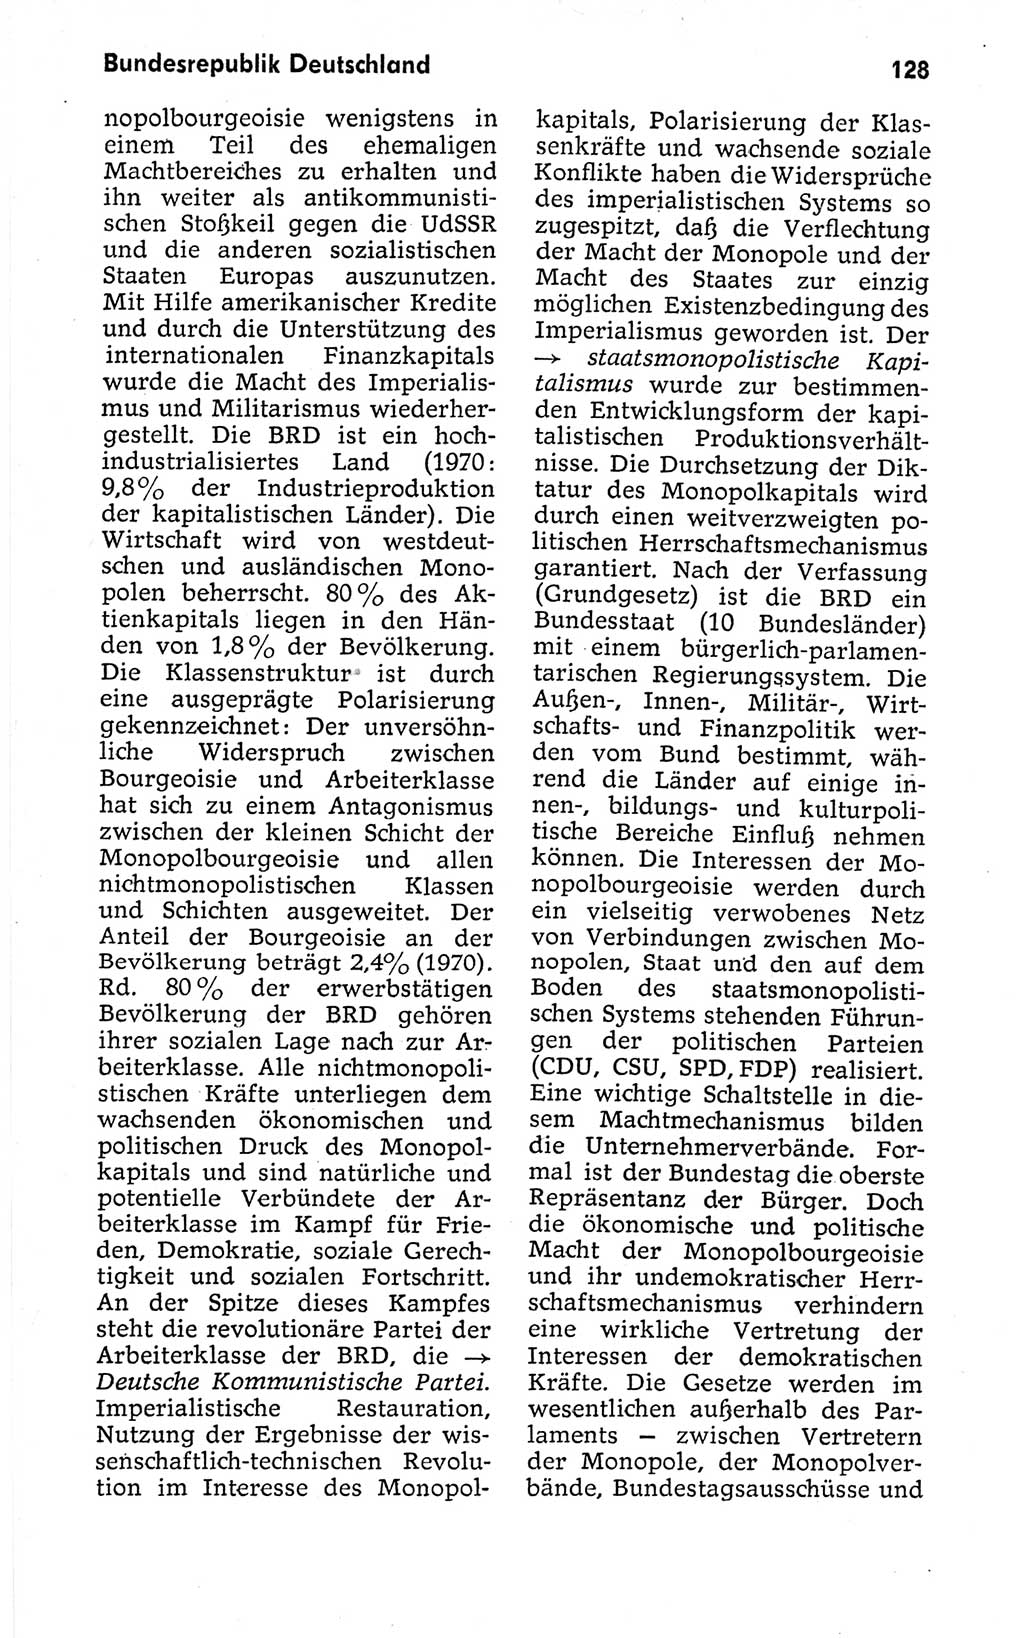 Kleines politisches Wörterbuch [Deutsche Demokratische Republik (DDR)] 1973, Seite 128 (Kl. pol. Wb. DDR 1973, S. 128)